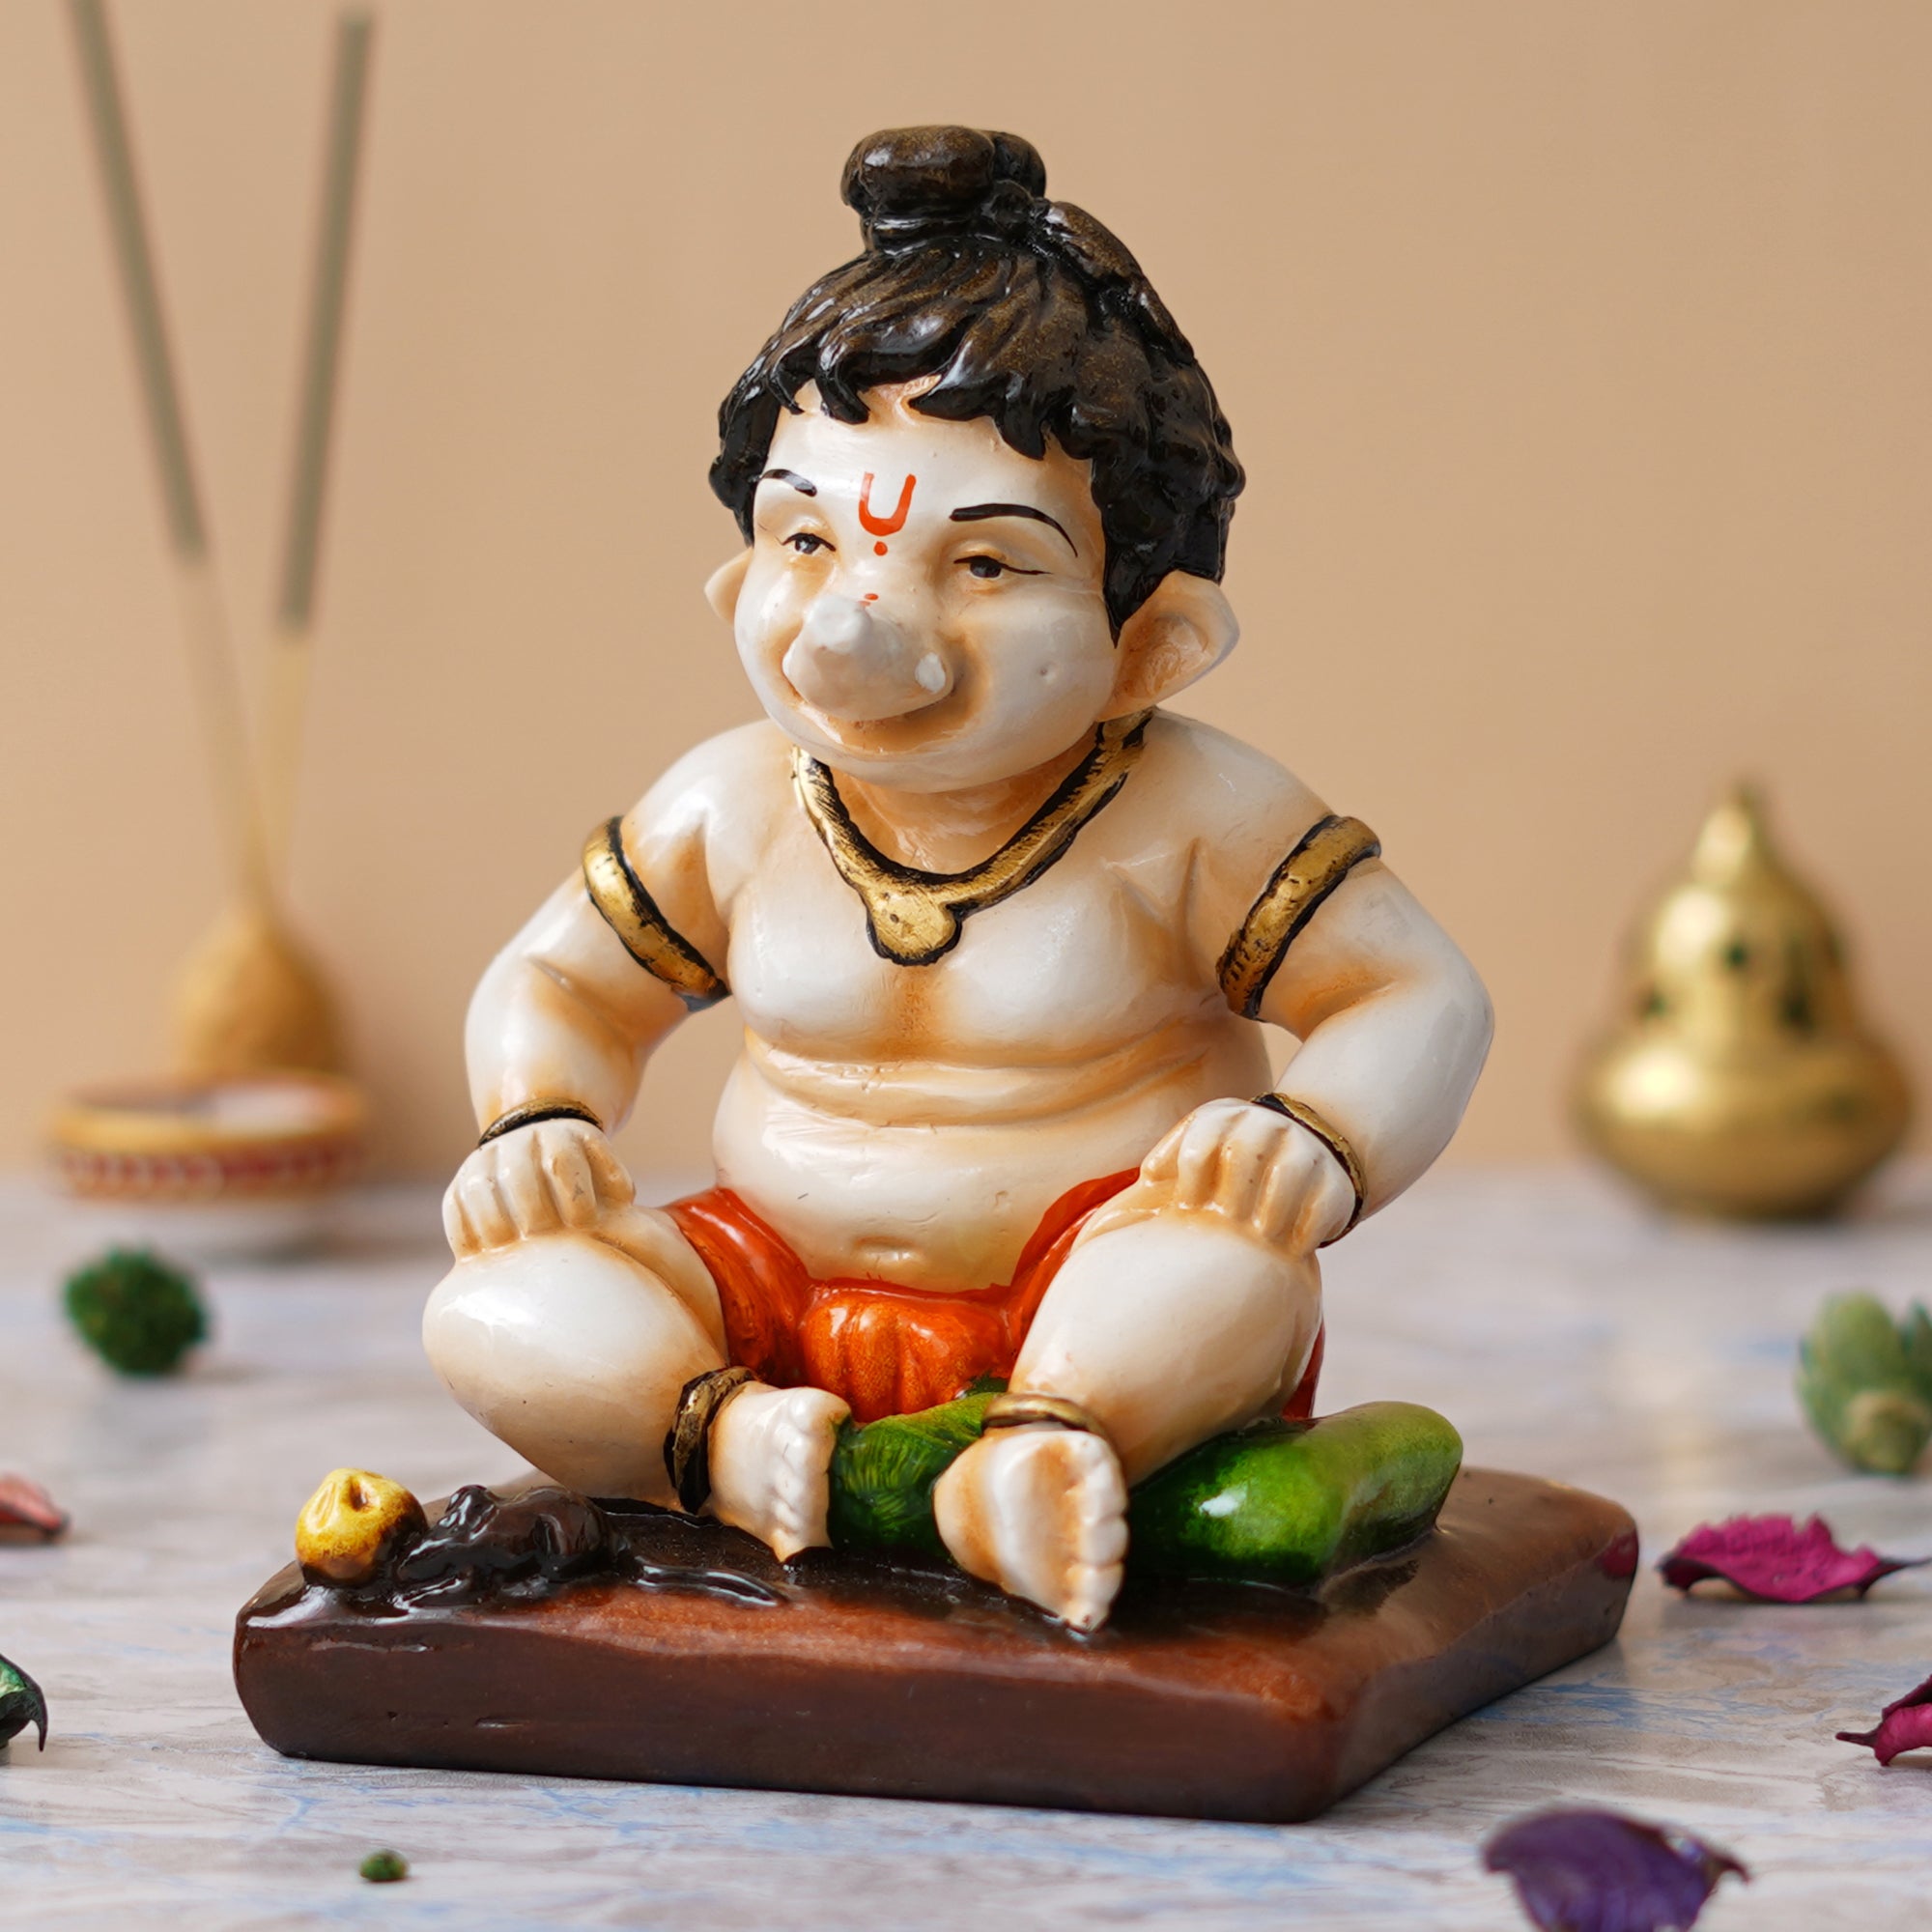 eCraftIndia Multicolor Polyresin Handcrafted Sitting Lord Ganesha Idol 1